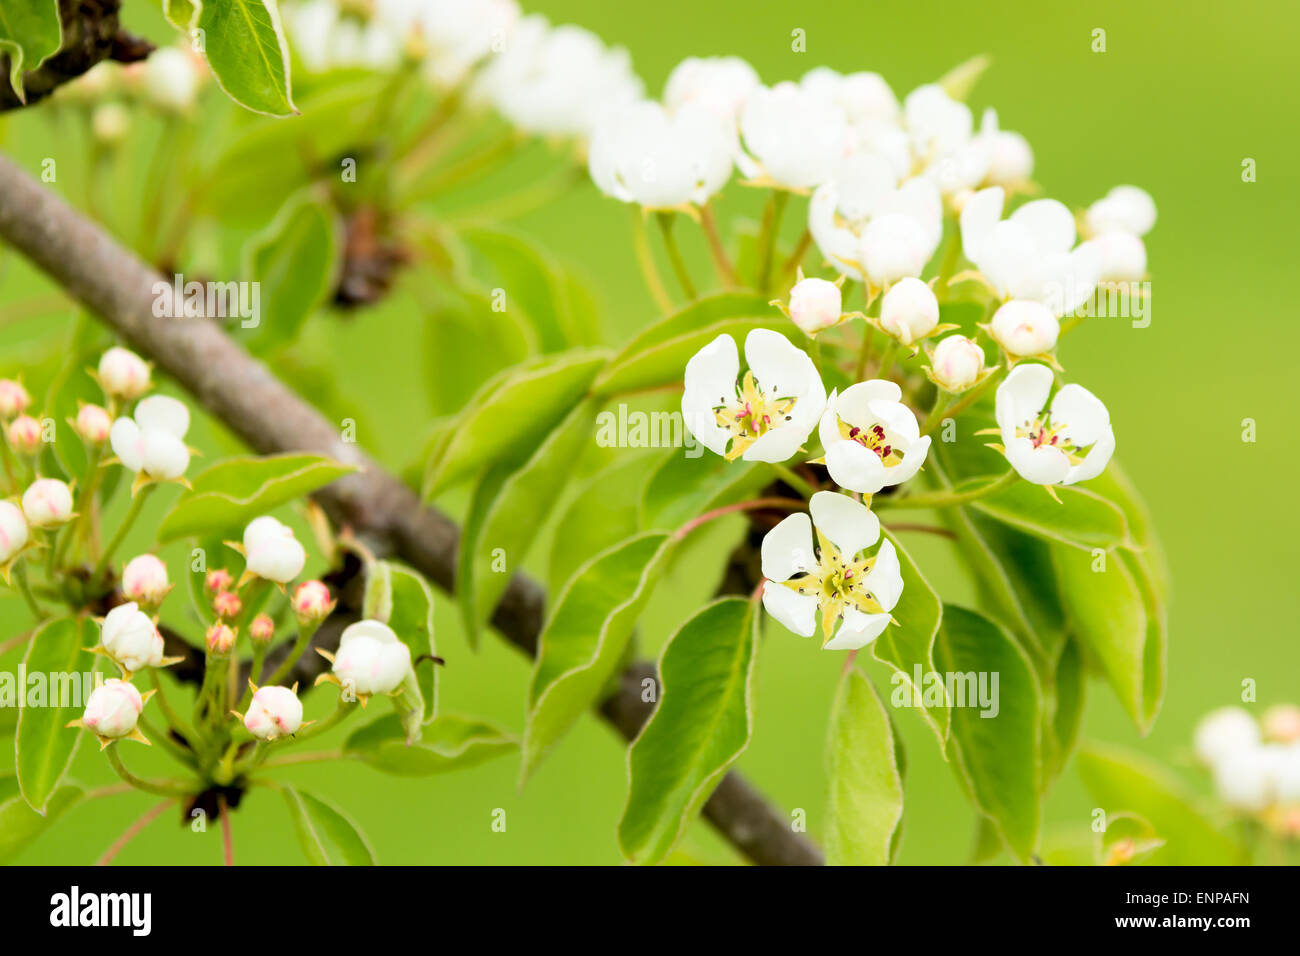 Belles fleurs blanches d'ou poire commun (Pyrus communis). Ici vu de fond vert. Banque D'Images